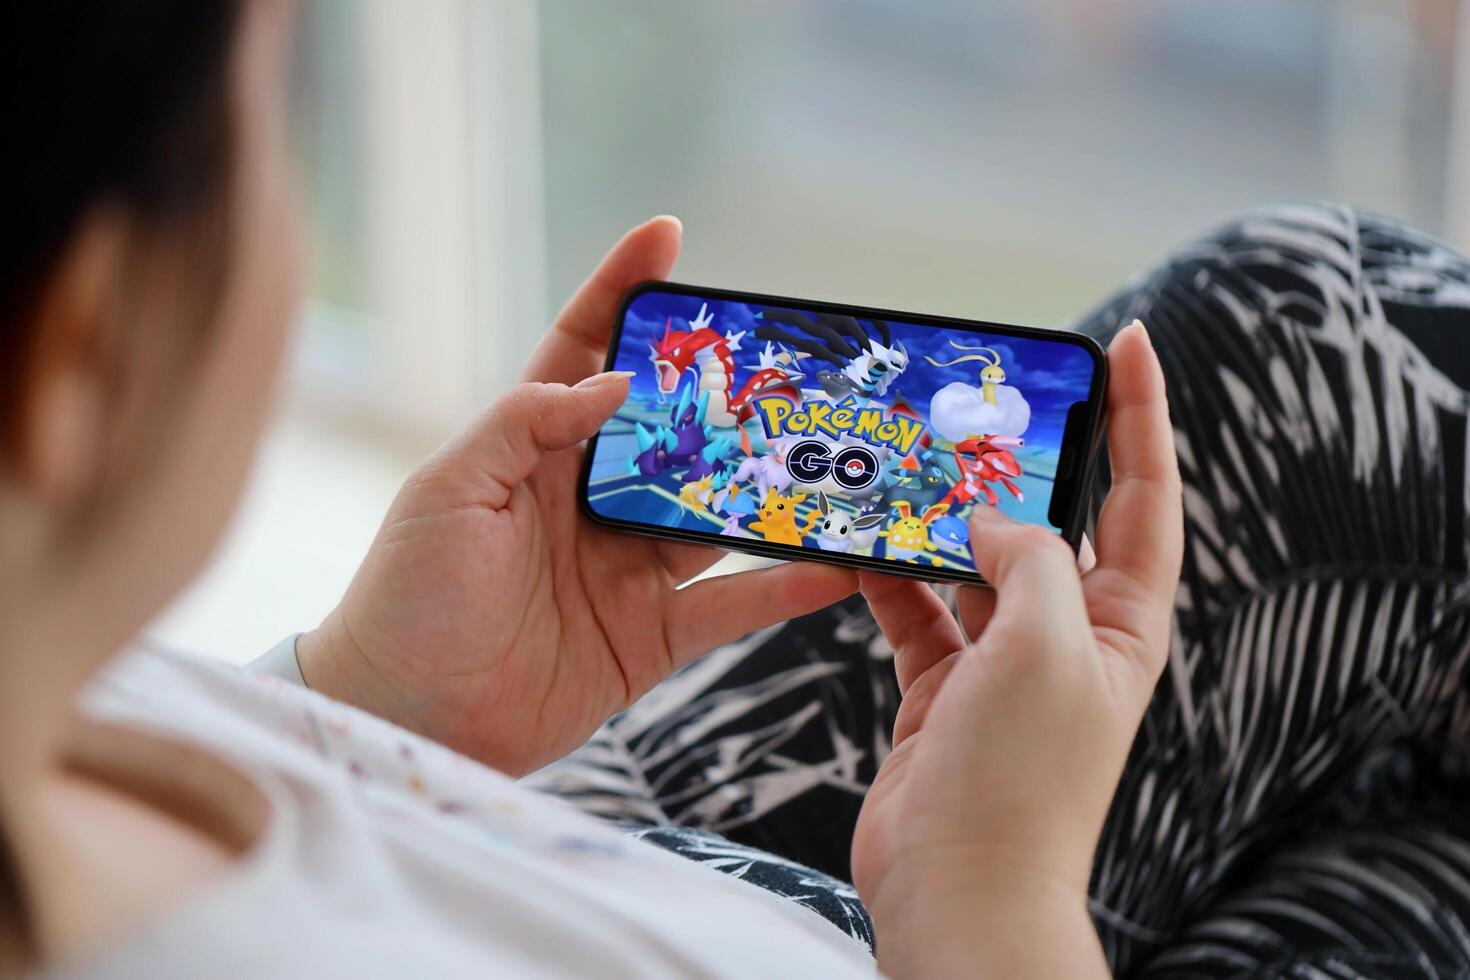 Pokemon Gaan mobiel iOS spel Aan iphone 15 smartphone scherm in vrouw handen gedurende mobiel gameplay foto